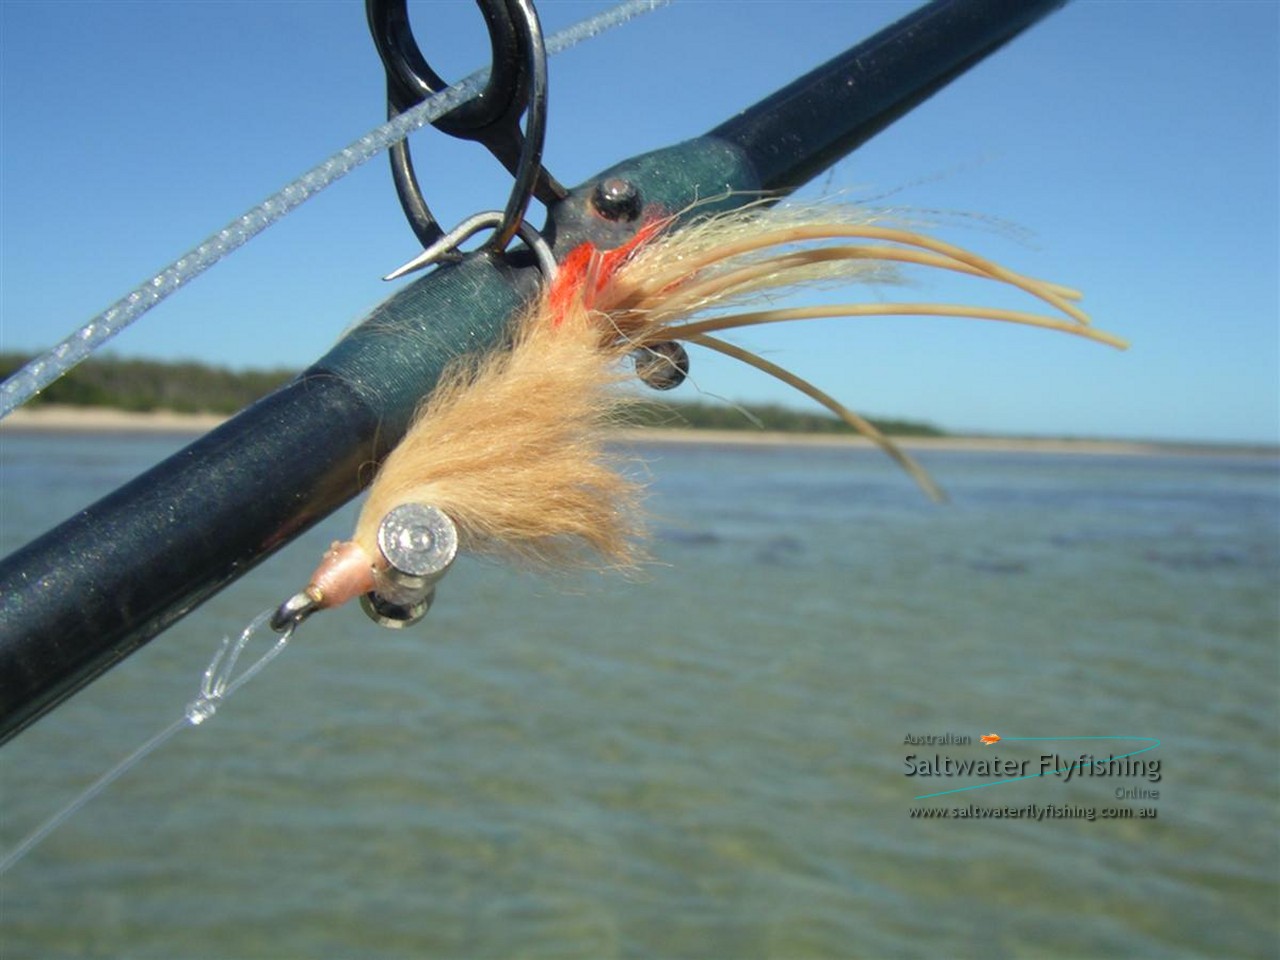 Australian Saltwater Fly Fishing Online